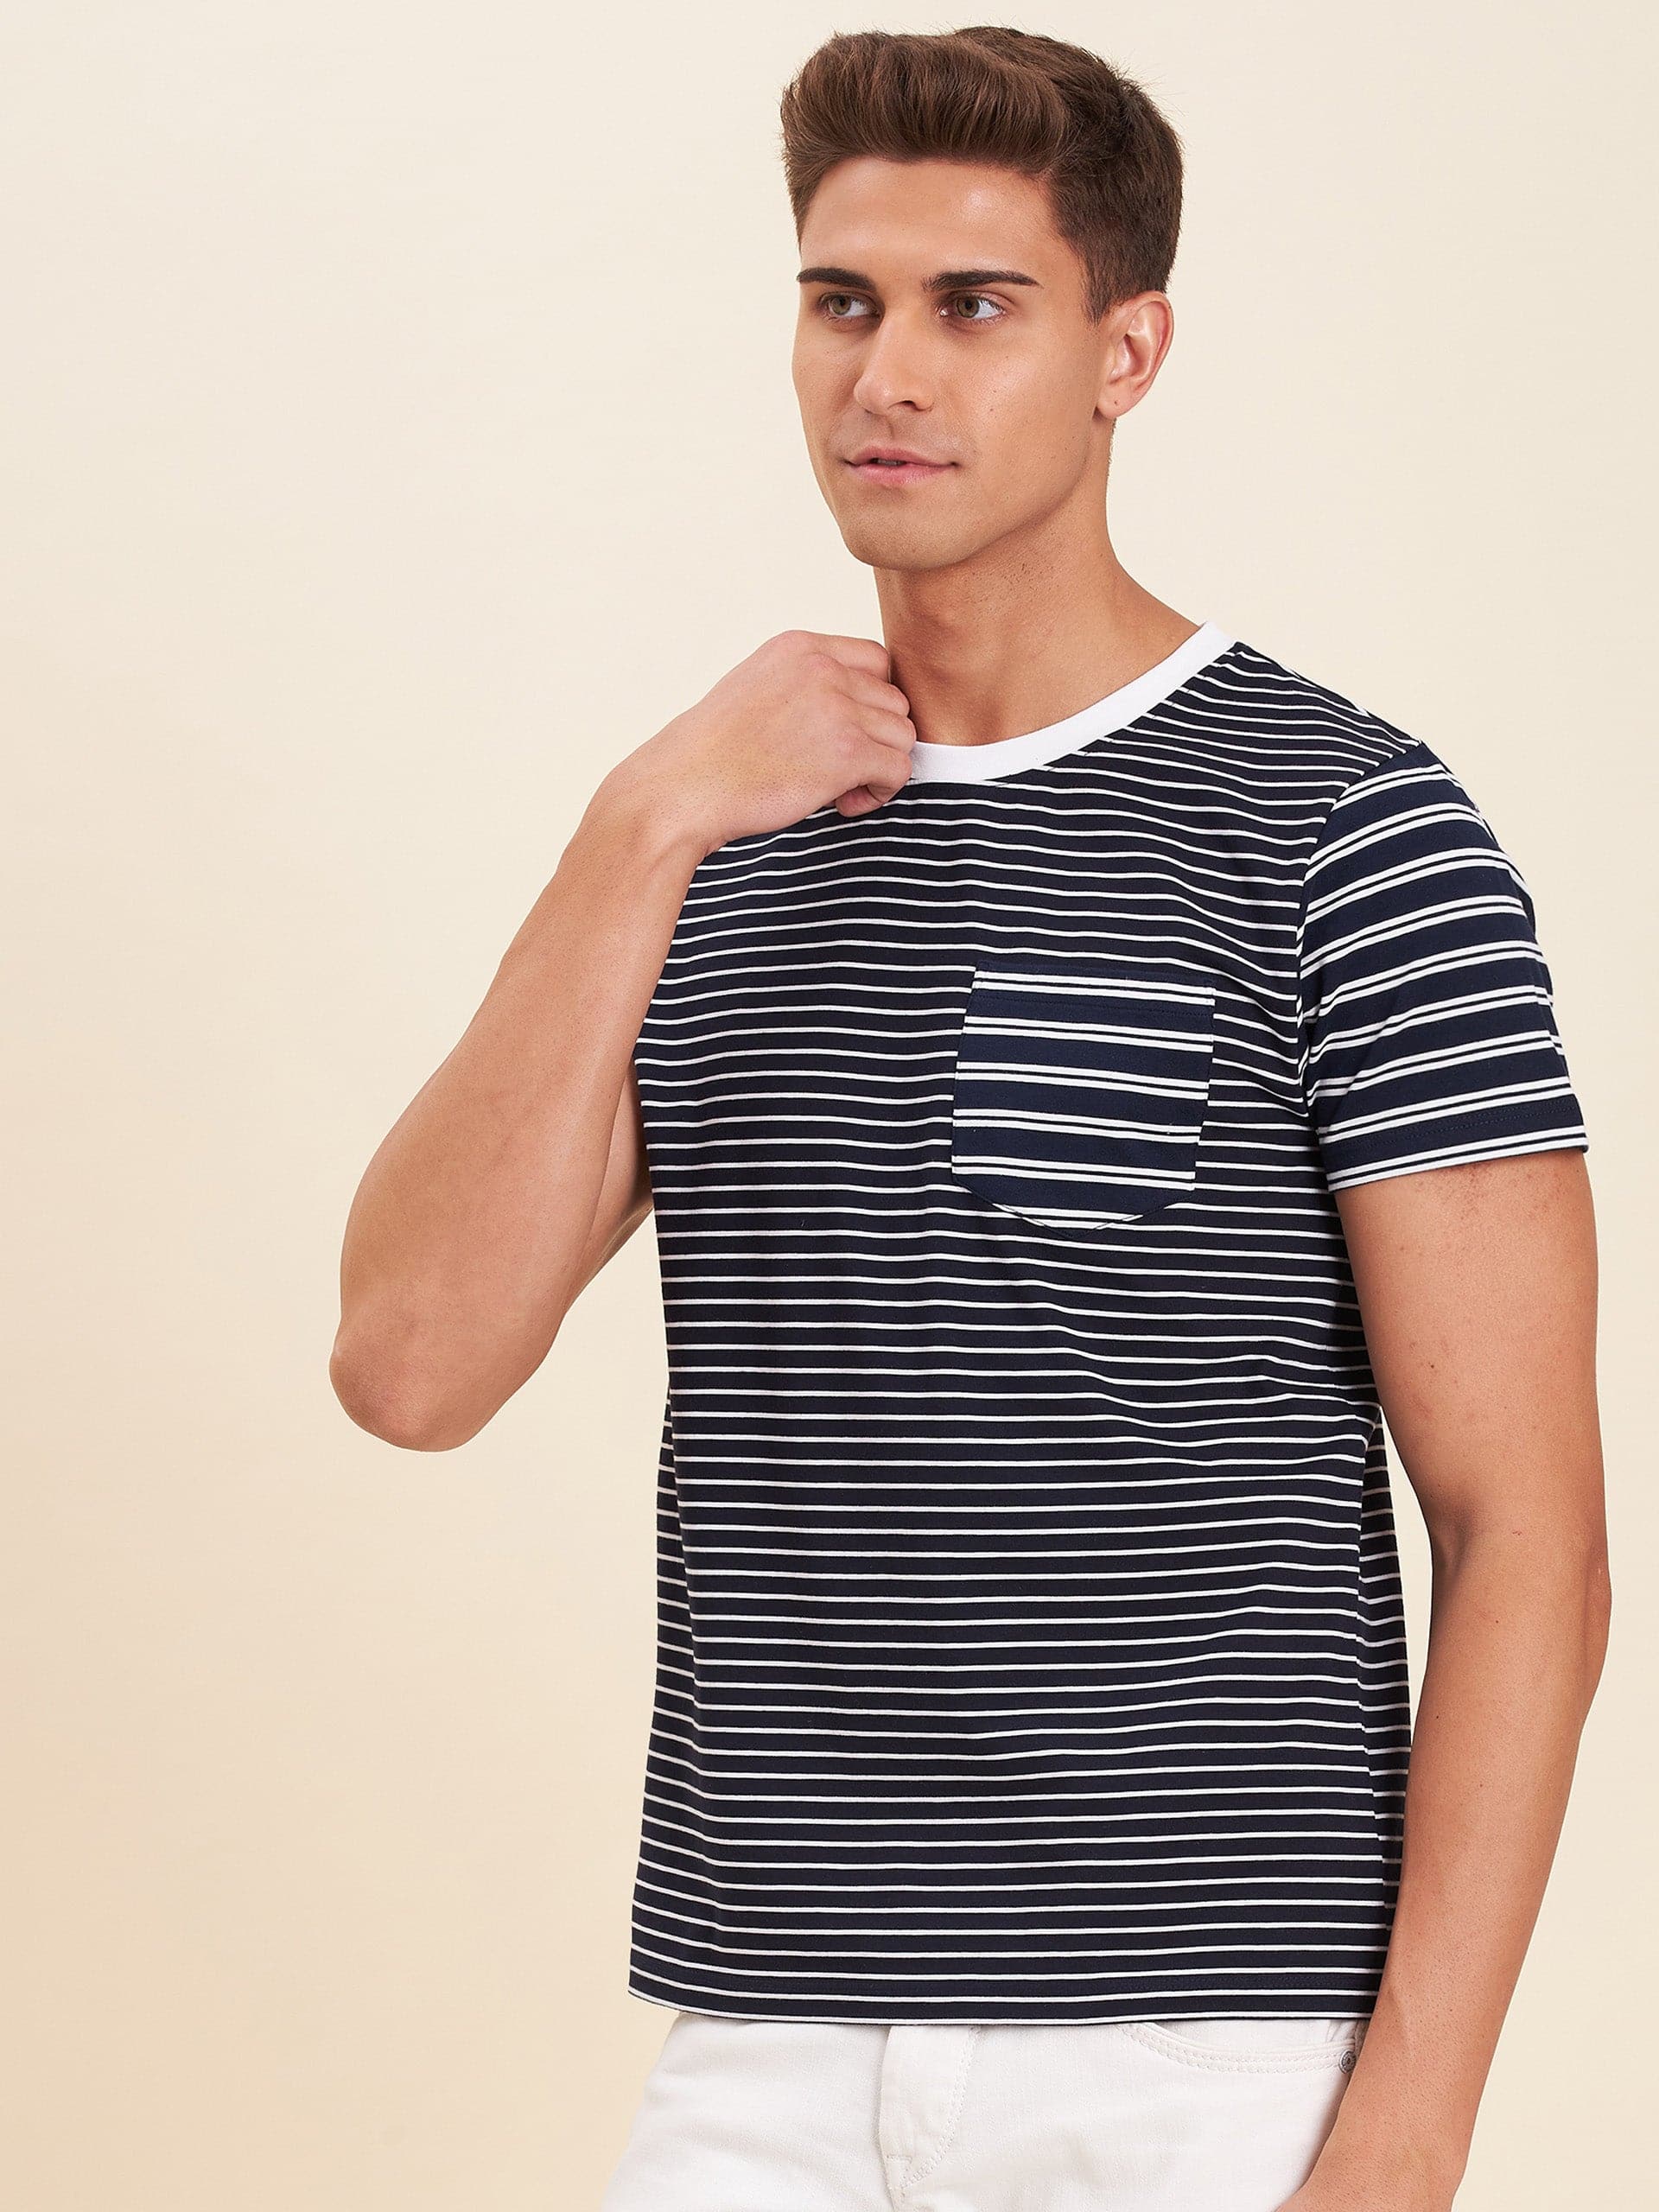 Men's Navy & White Stripes Pocket Cotton T-Shirt - LYUSH-MASCLN